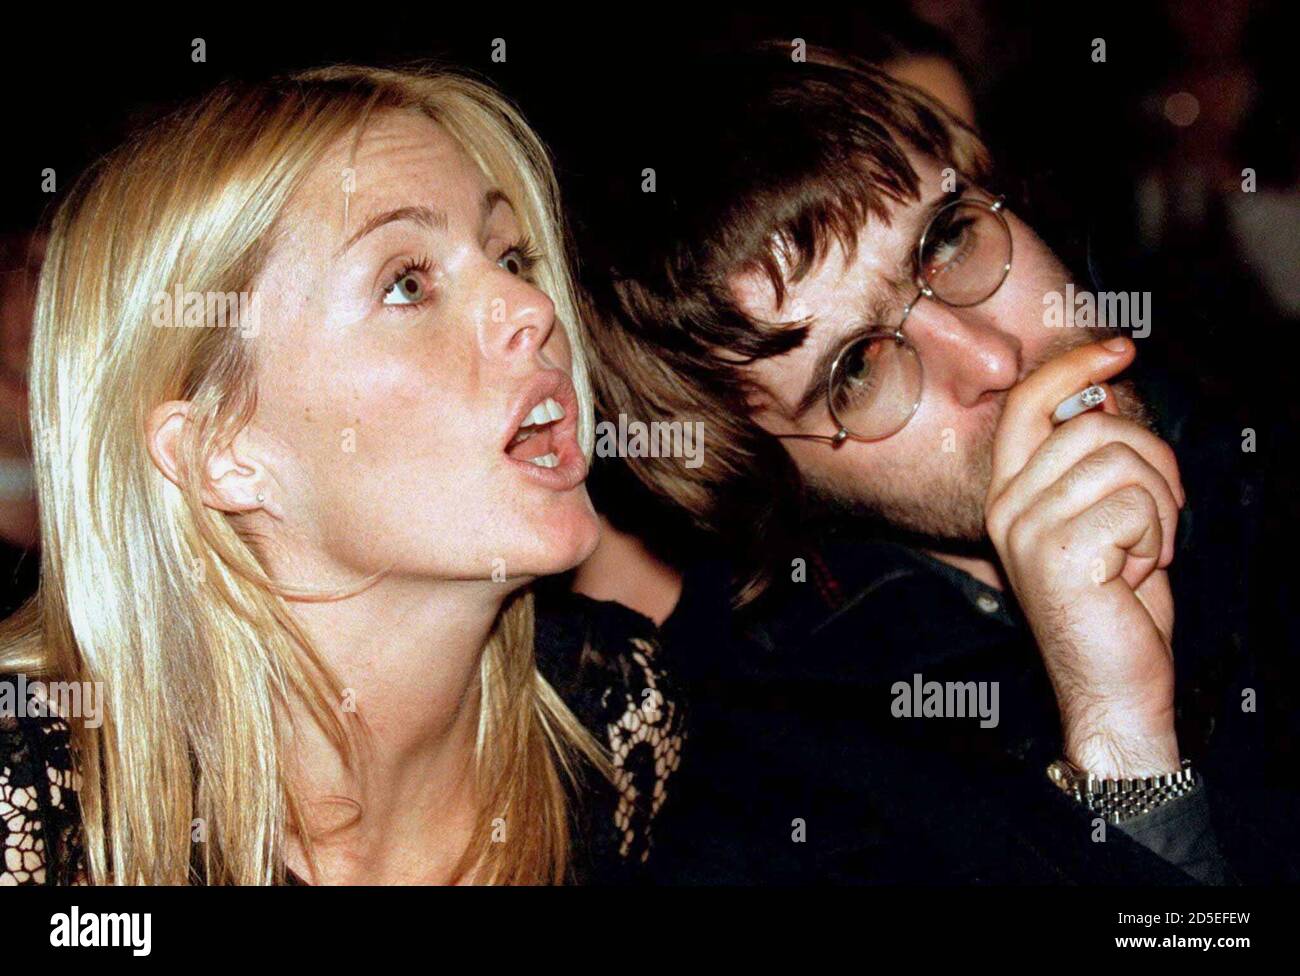 Schauspielerin Patsy Kensit mit Oasis-Sänger Liam Gallagher verheiratet in  Geheimnis, 7. April, im Bild gerade eine irische Charity-Modenschau. Das  Paar abgesagt ihre Hochzeit in letzter Minute früher in diesem Jahr durch  das